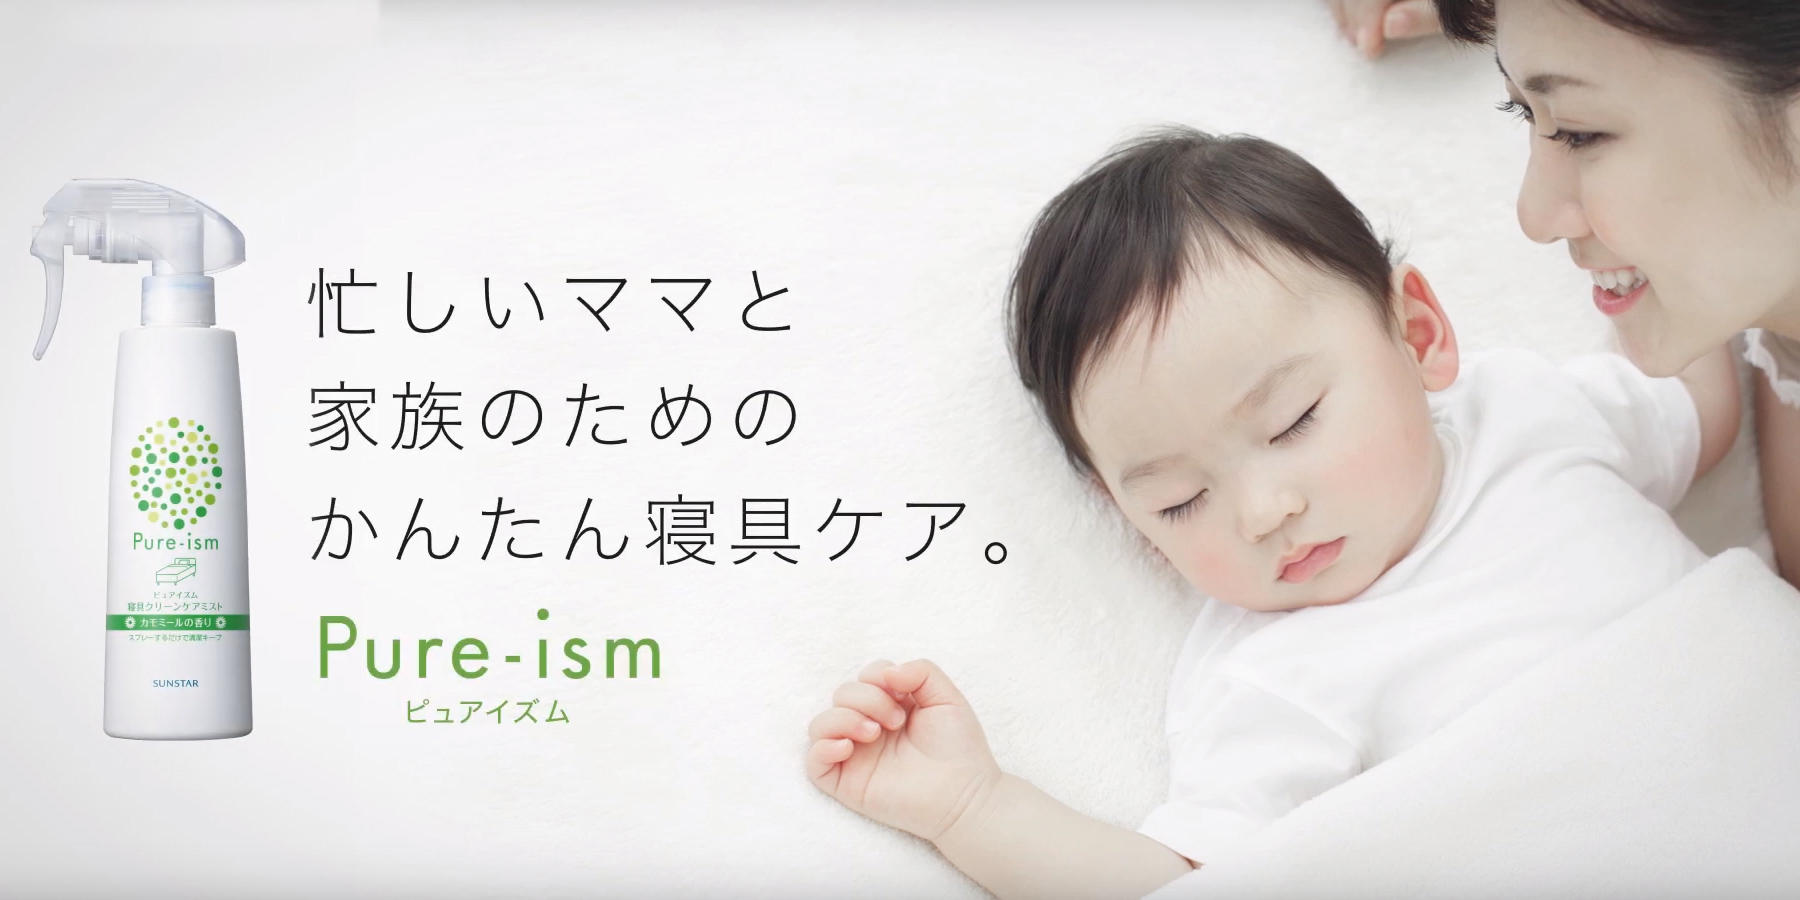 ピュアイズム 寝具クリーンケアミスト紹介動画「忙しいママと家族のためのカンタン寝具ケア」